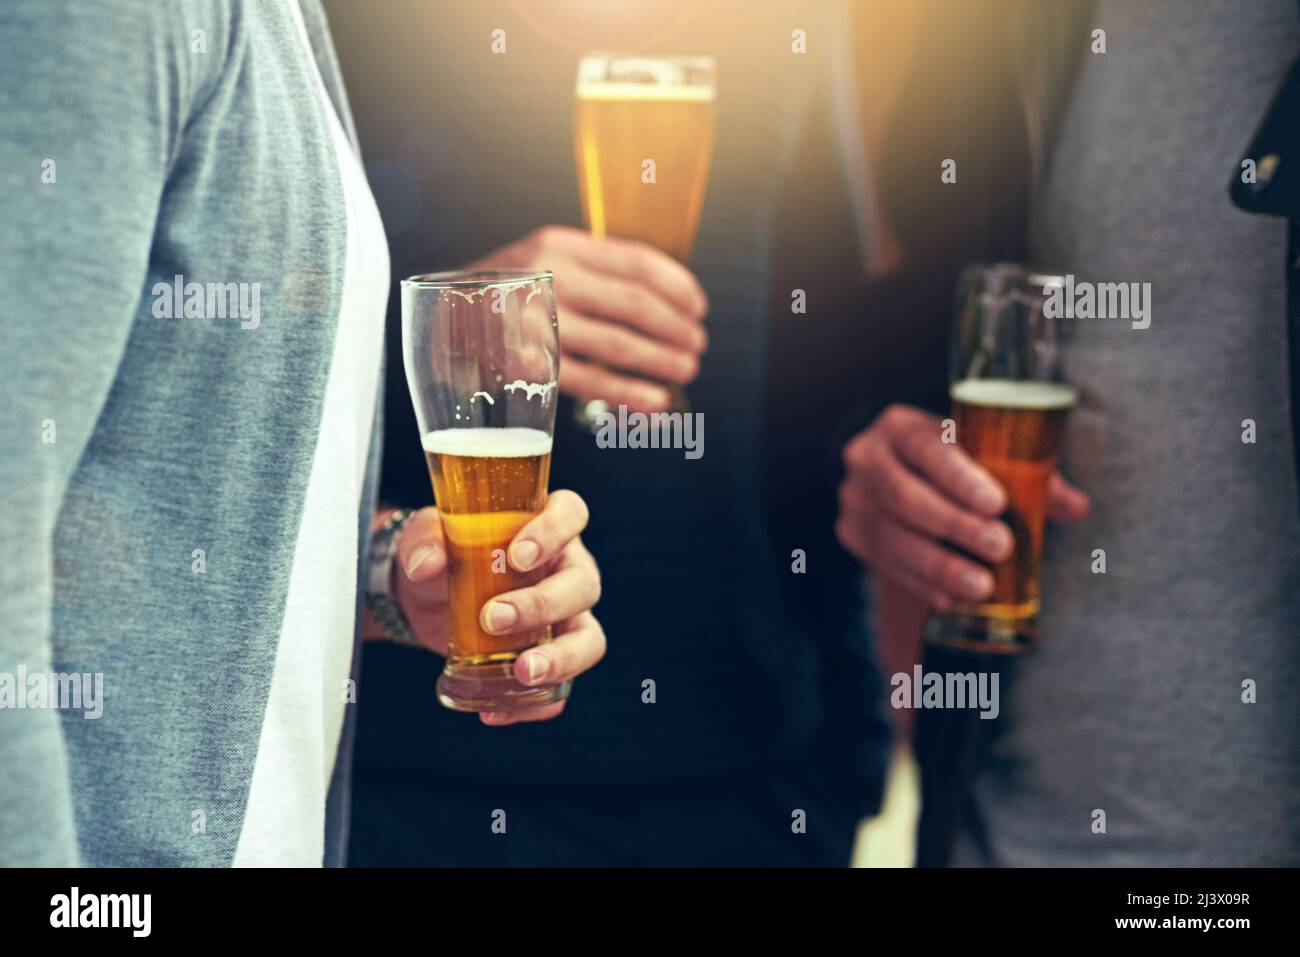 Gute Freunde, gutes Bier. Eine kurze Aufnahme einer Gruppe von nicht identifizierbaren Freunden, die zusammen ein Bier trinken. Stockfoto